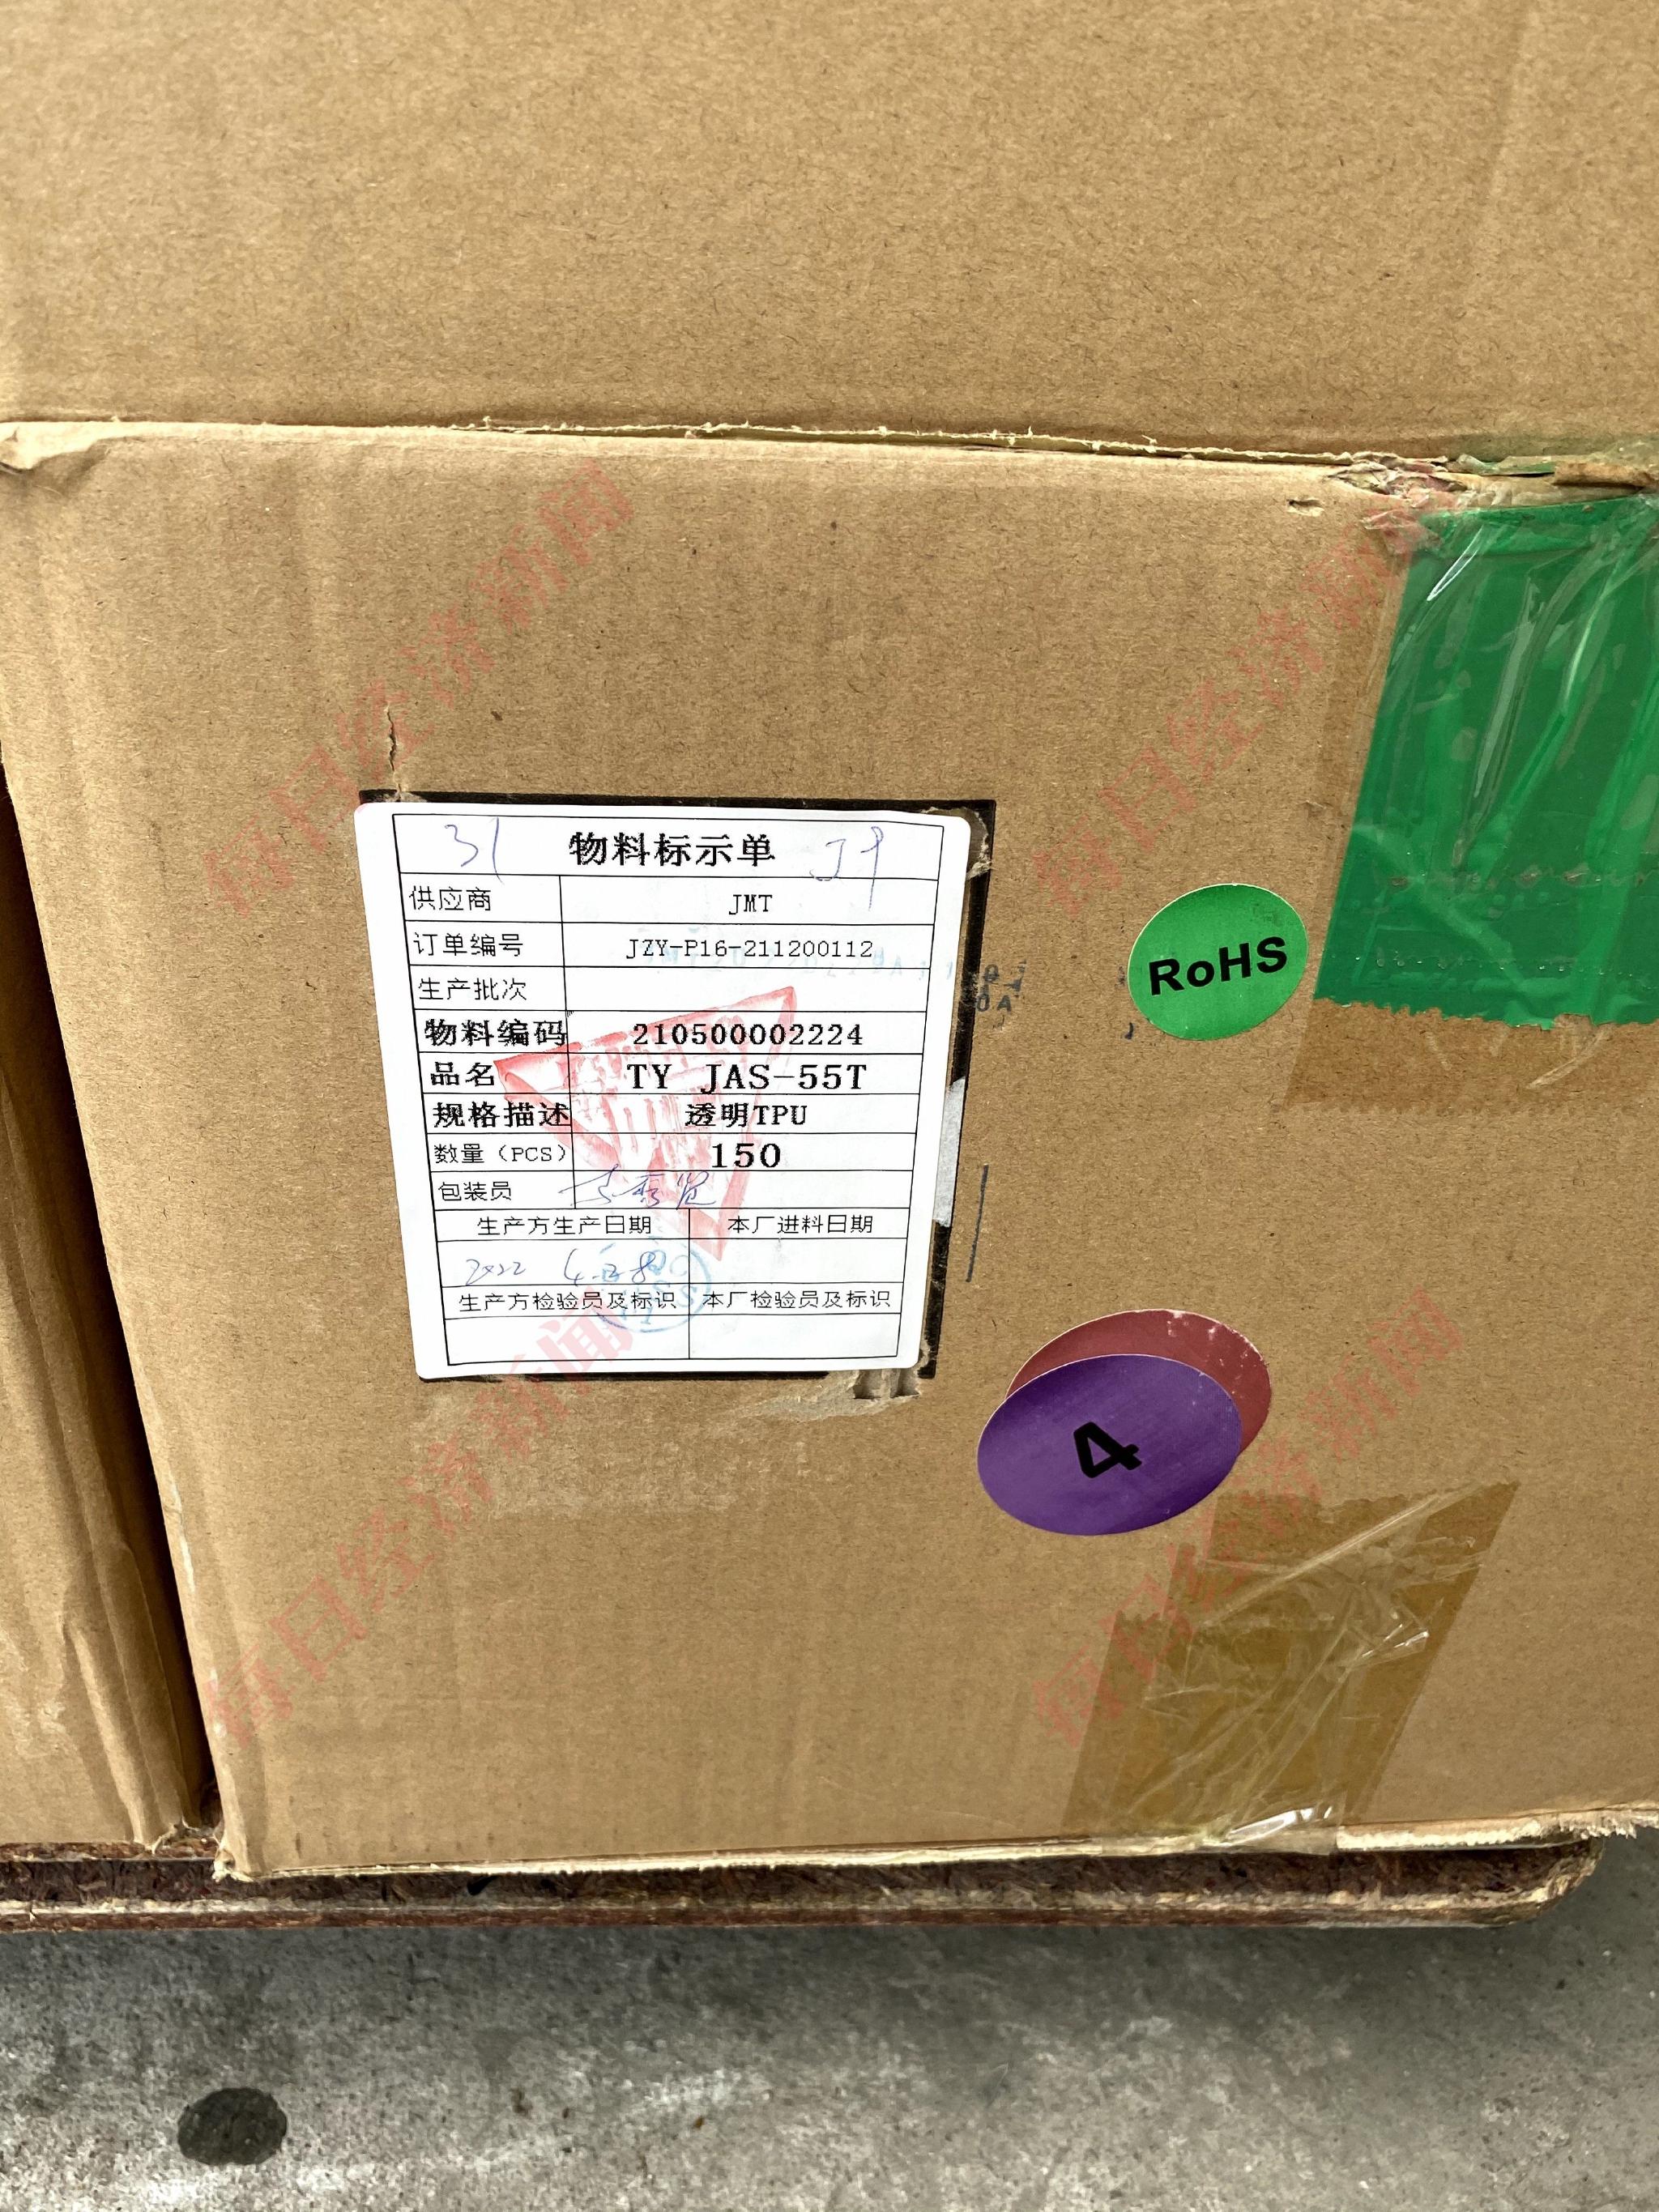 5月5日中午，捷之和一楼堆积的纸箱“物料标示单”显示：“供应商：JMT”。 图片来源：每经记者 舒冬妮 摄